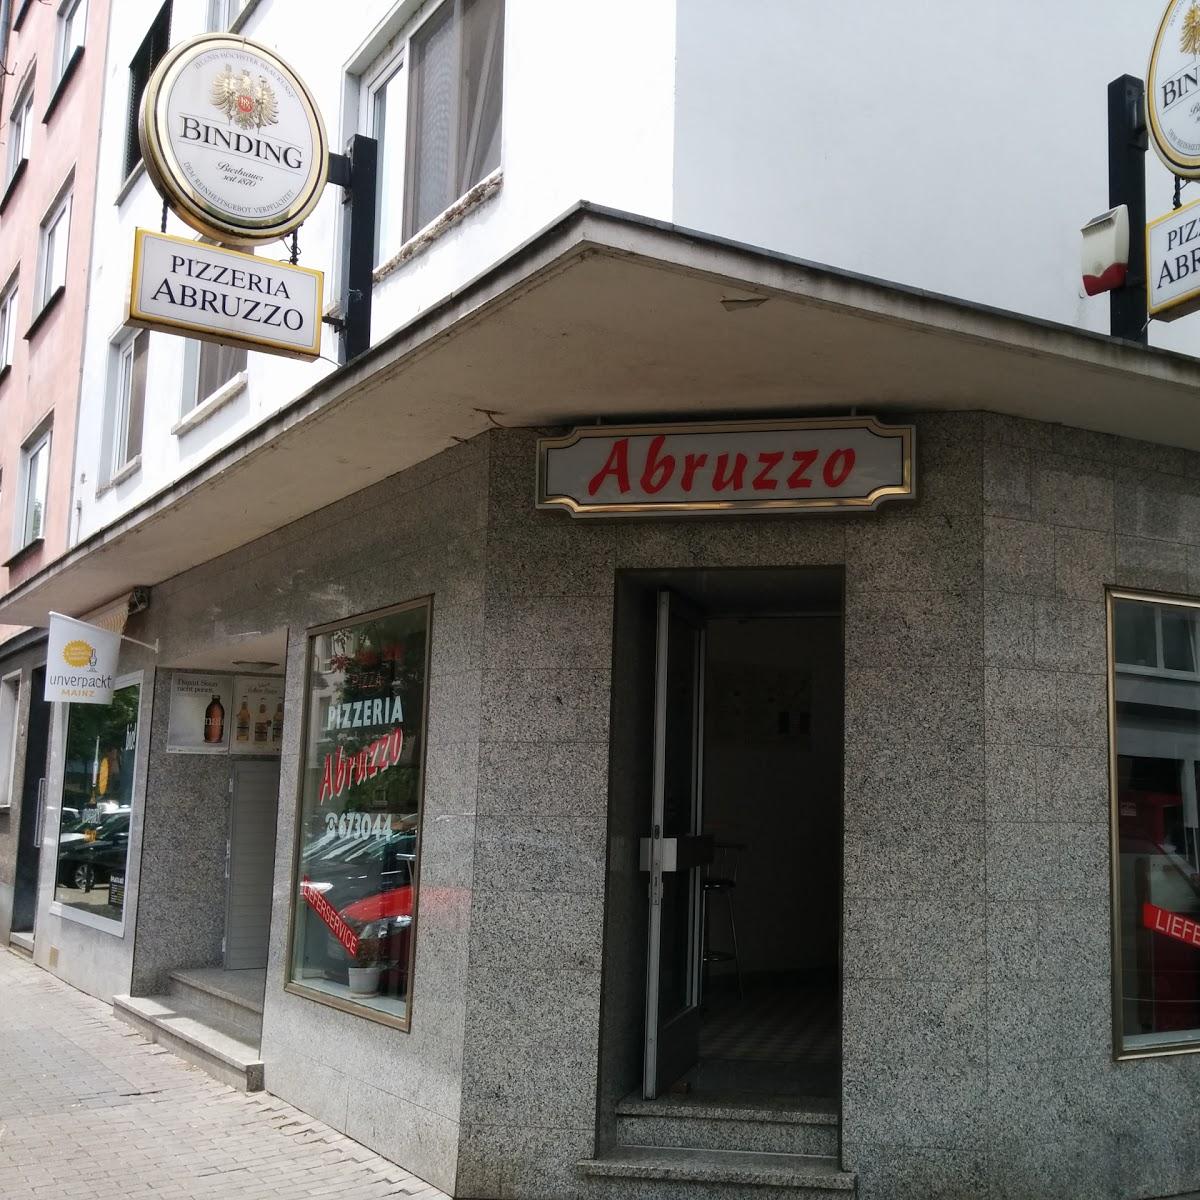 Restaurant "Pizzeria Abruzzo" in Mainz